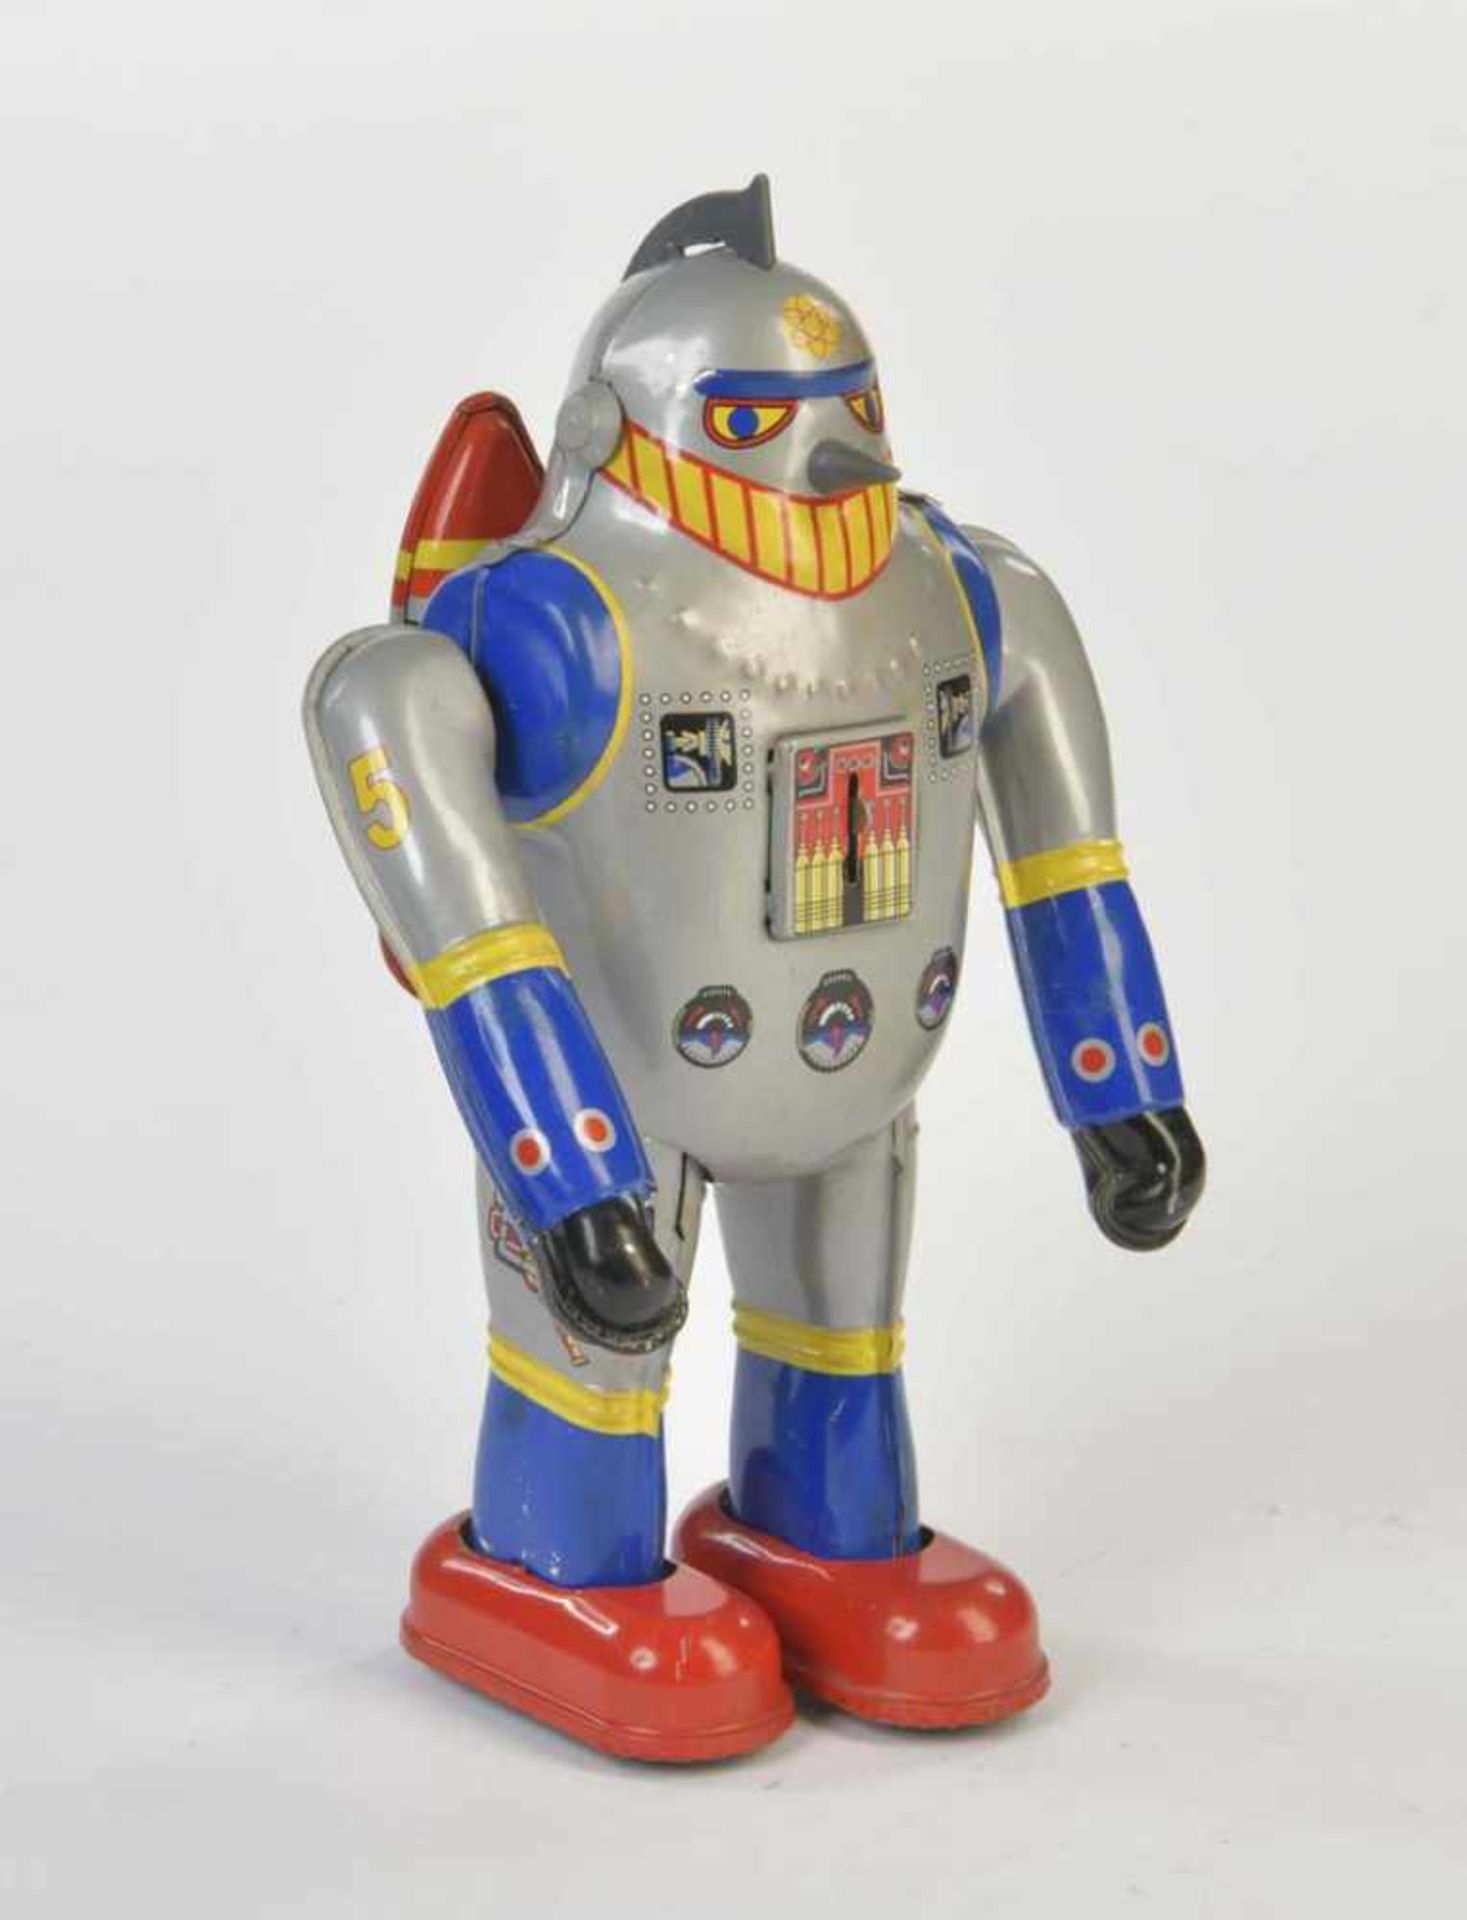 Tetsujn Roboter 28-GO, 23 cm, Blech, UW ok, min. LM, Z 2+Tetsujn Robot 28-GO, tin, cw ok, min. paint